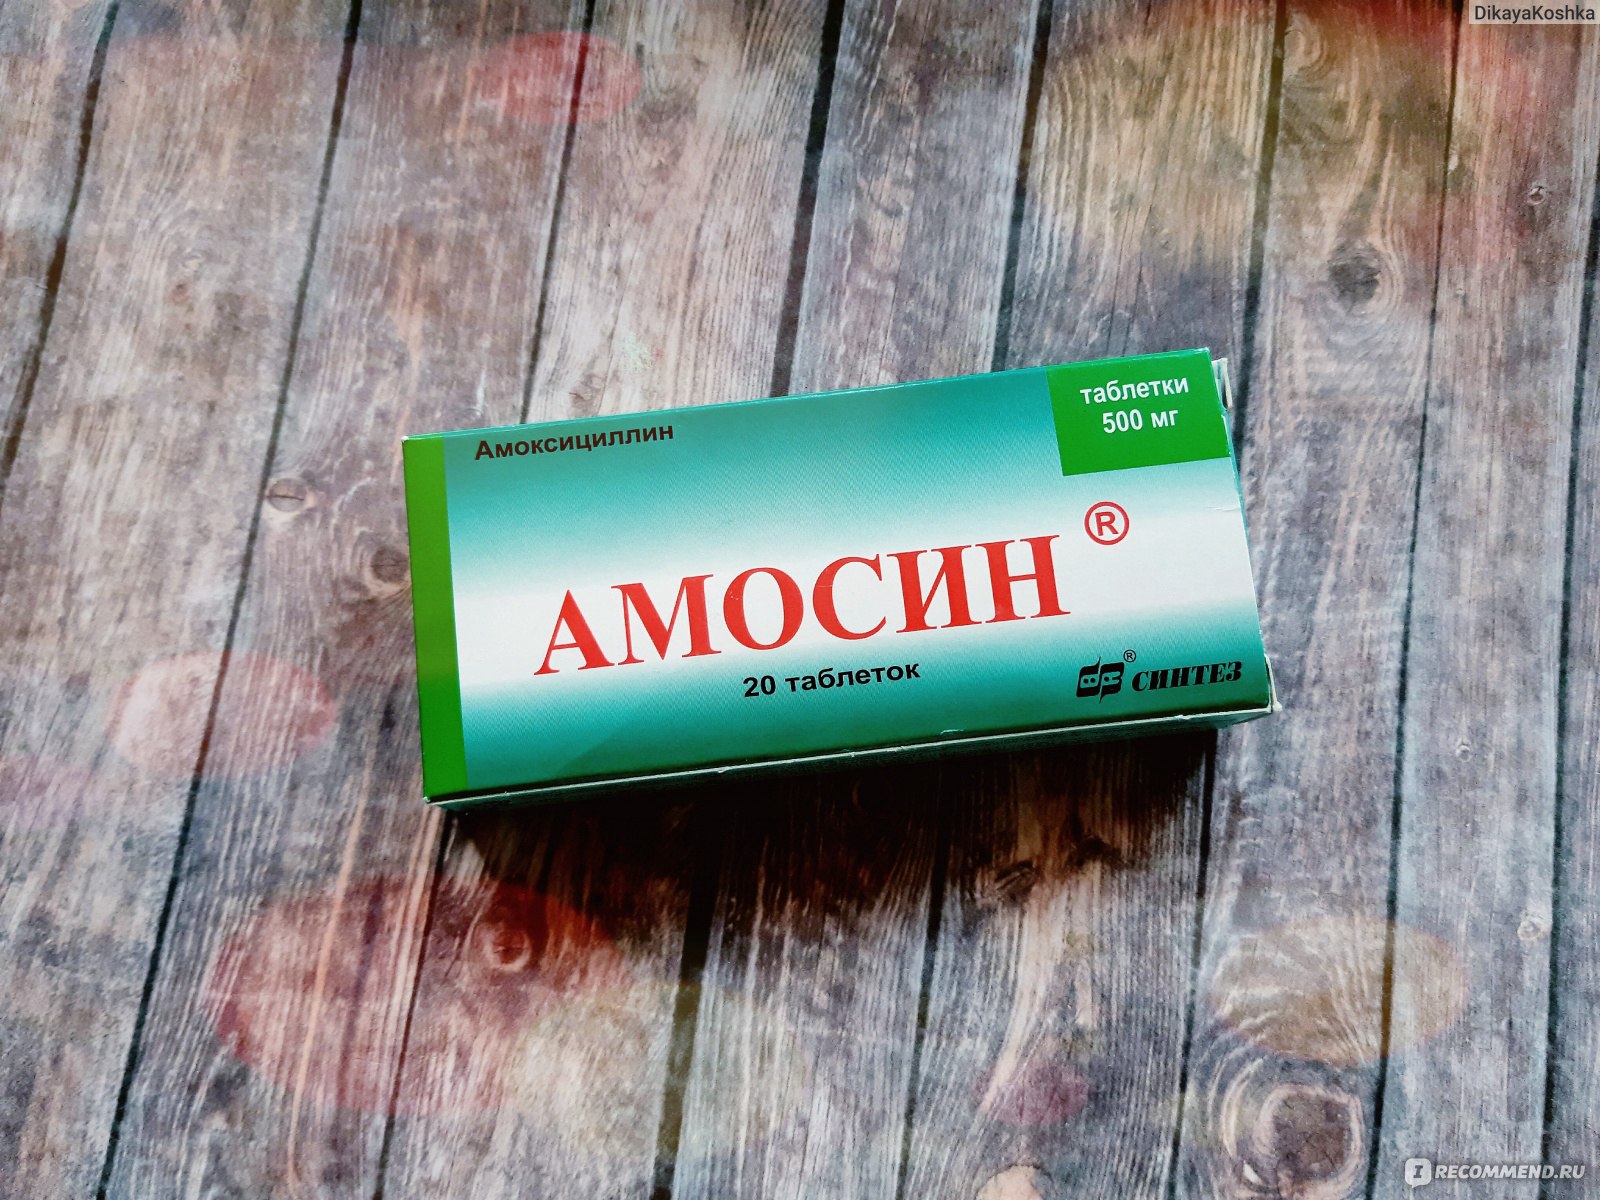 Антибиотик Синтез Амосин - «Эффективный амосин со своими недостатками .